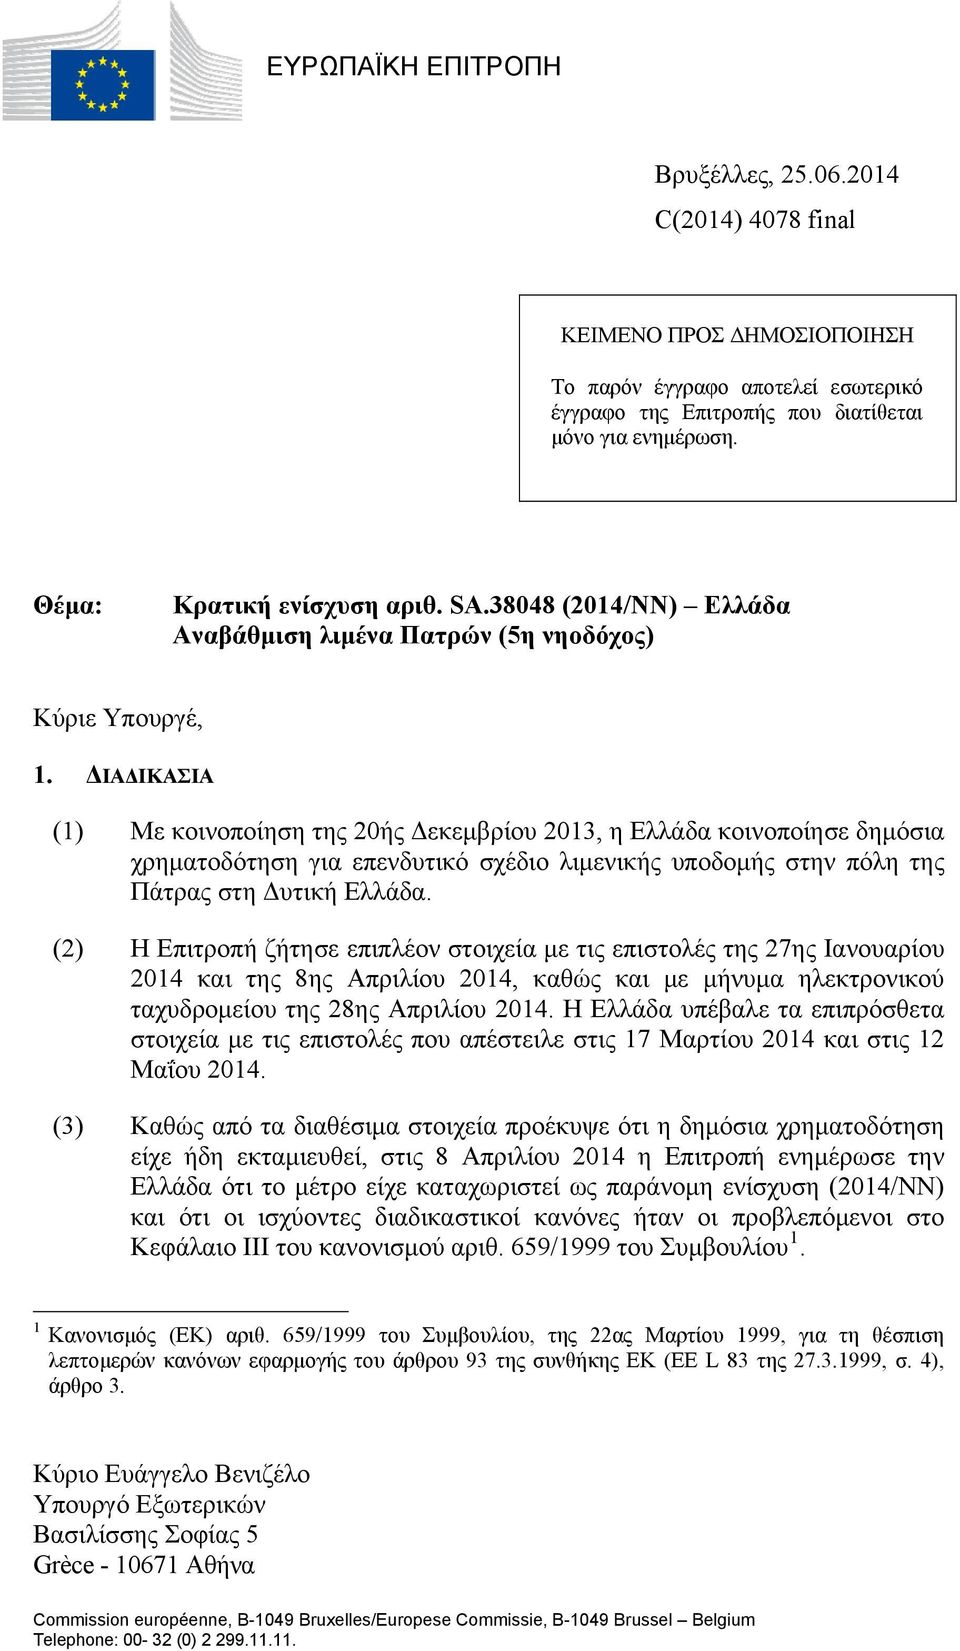 ΔΙΑΔΙΚΑΣΙΑ (1) Με κοινοποίηση της 20ής Δεκεμβρίου 2013, η Ελλάδα κοινοποίησε δημόσια χρηματοδότηση για επενδυτικό σχέδιο λιμενικής υποδομής στην πόλη της Πάτρας στη Δυτική Ελλάδα.